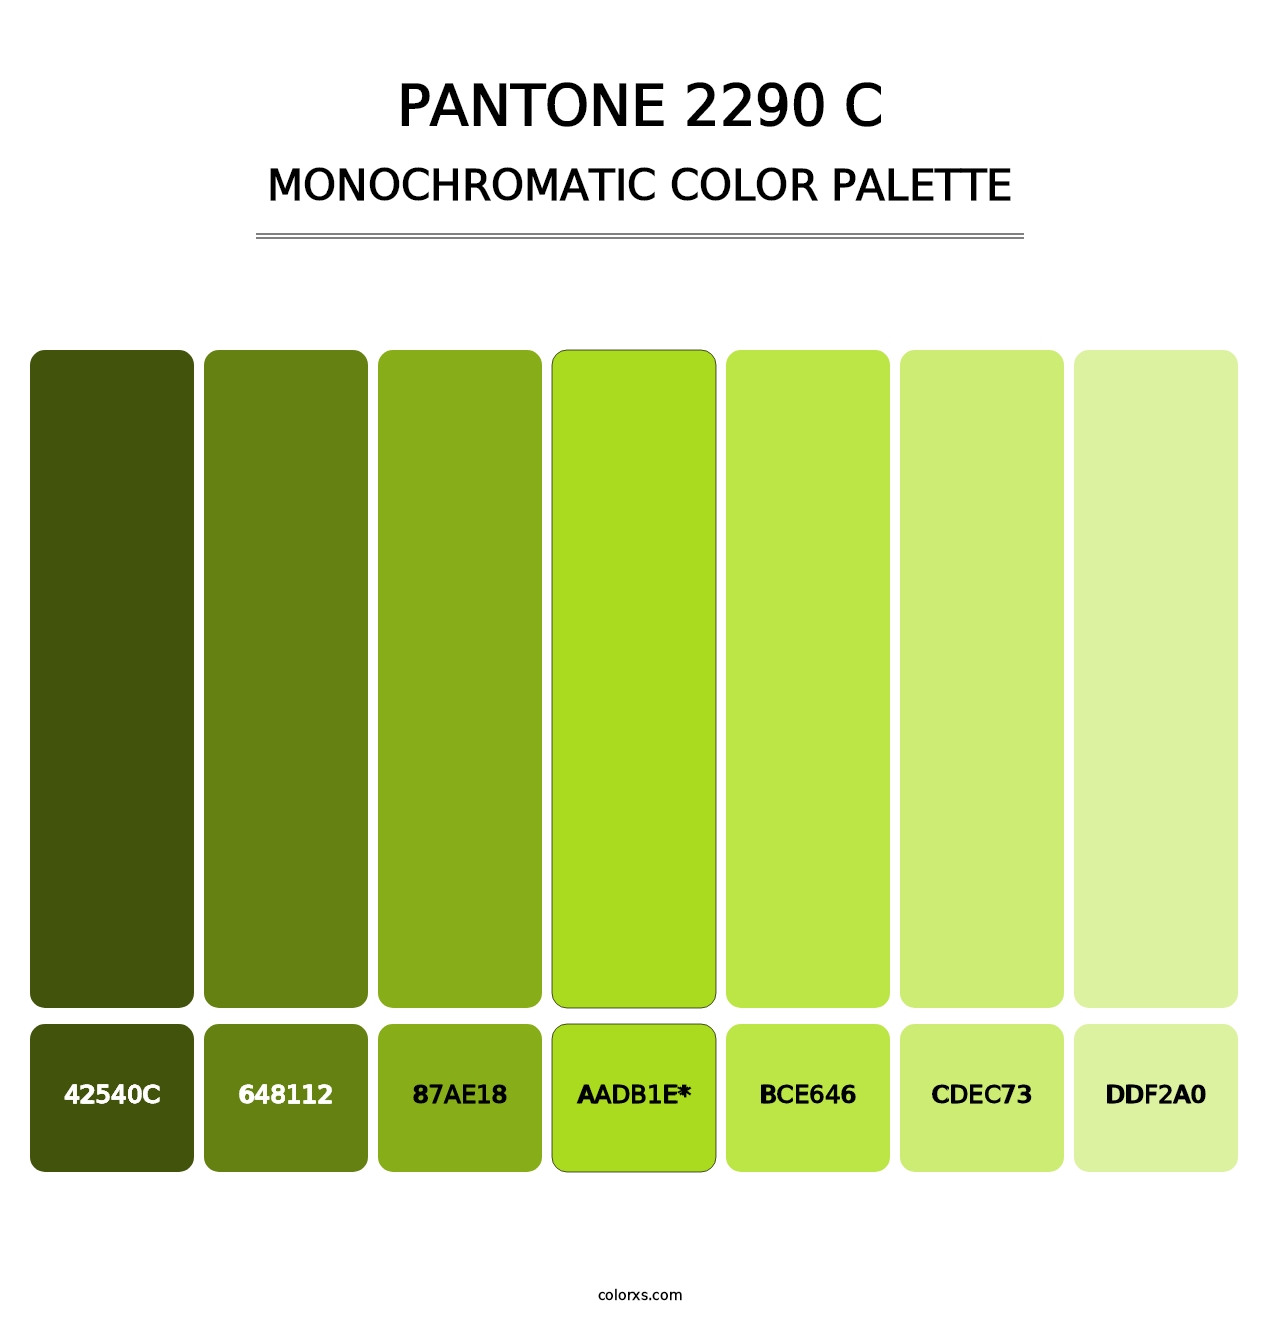 PANTONE 2290 C - Monochromatic Color Palette